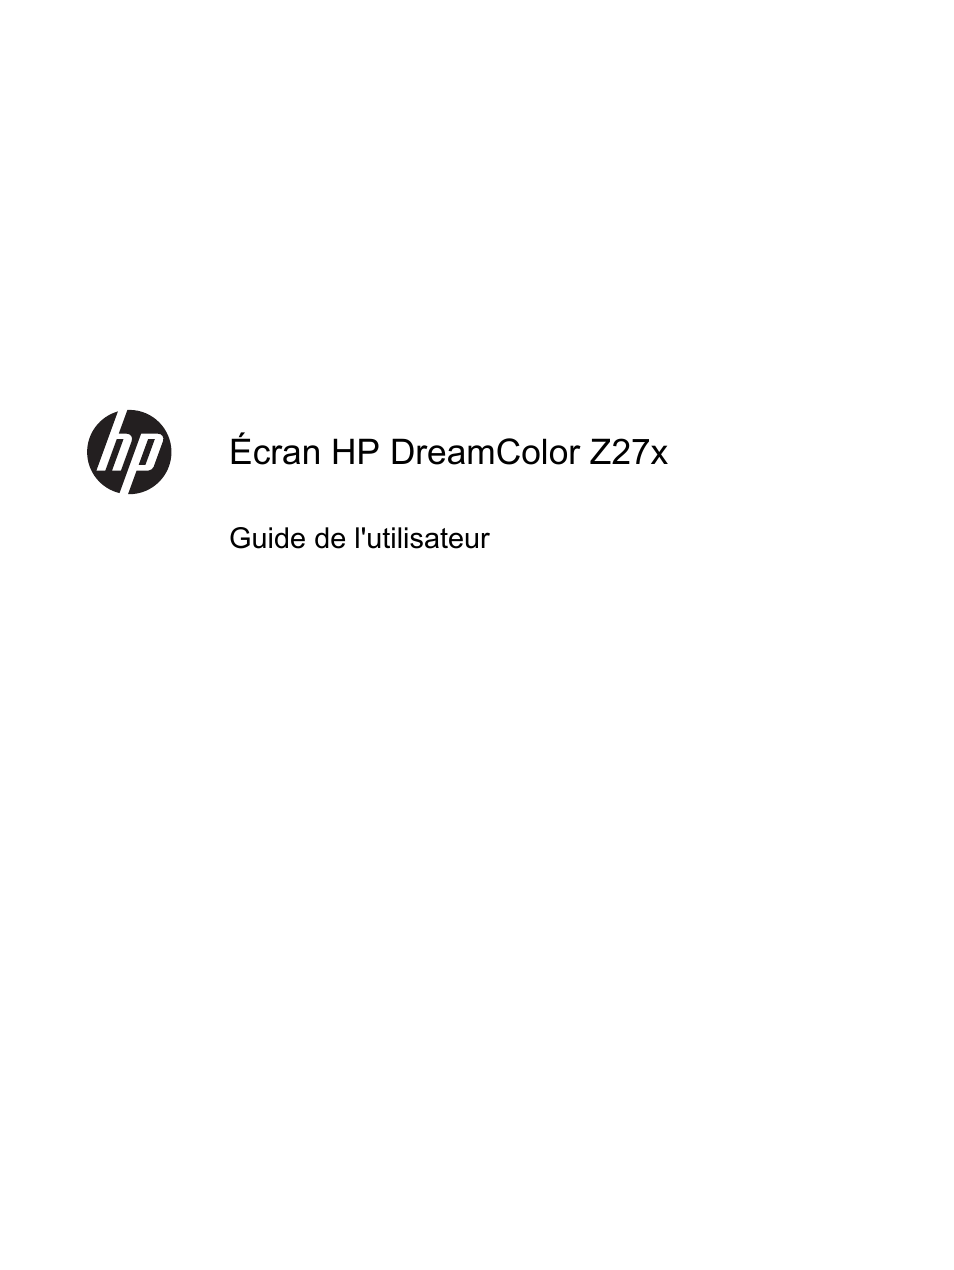 HP Ecran professionnel HP DreamColor Z27x Manuel d'utilisation | Pages: 81